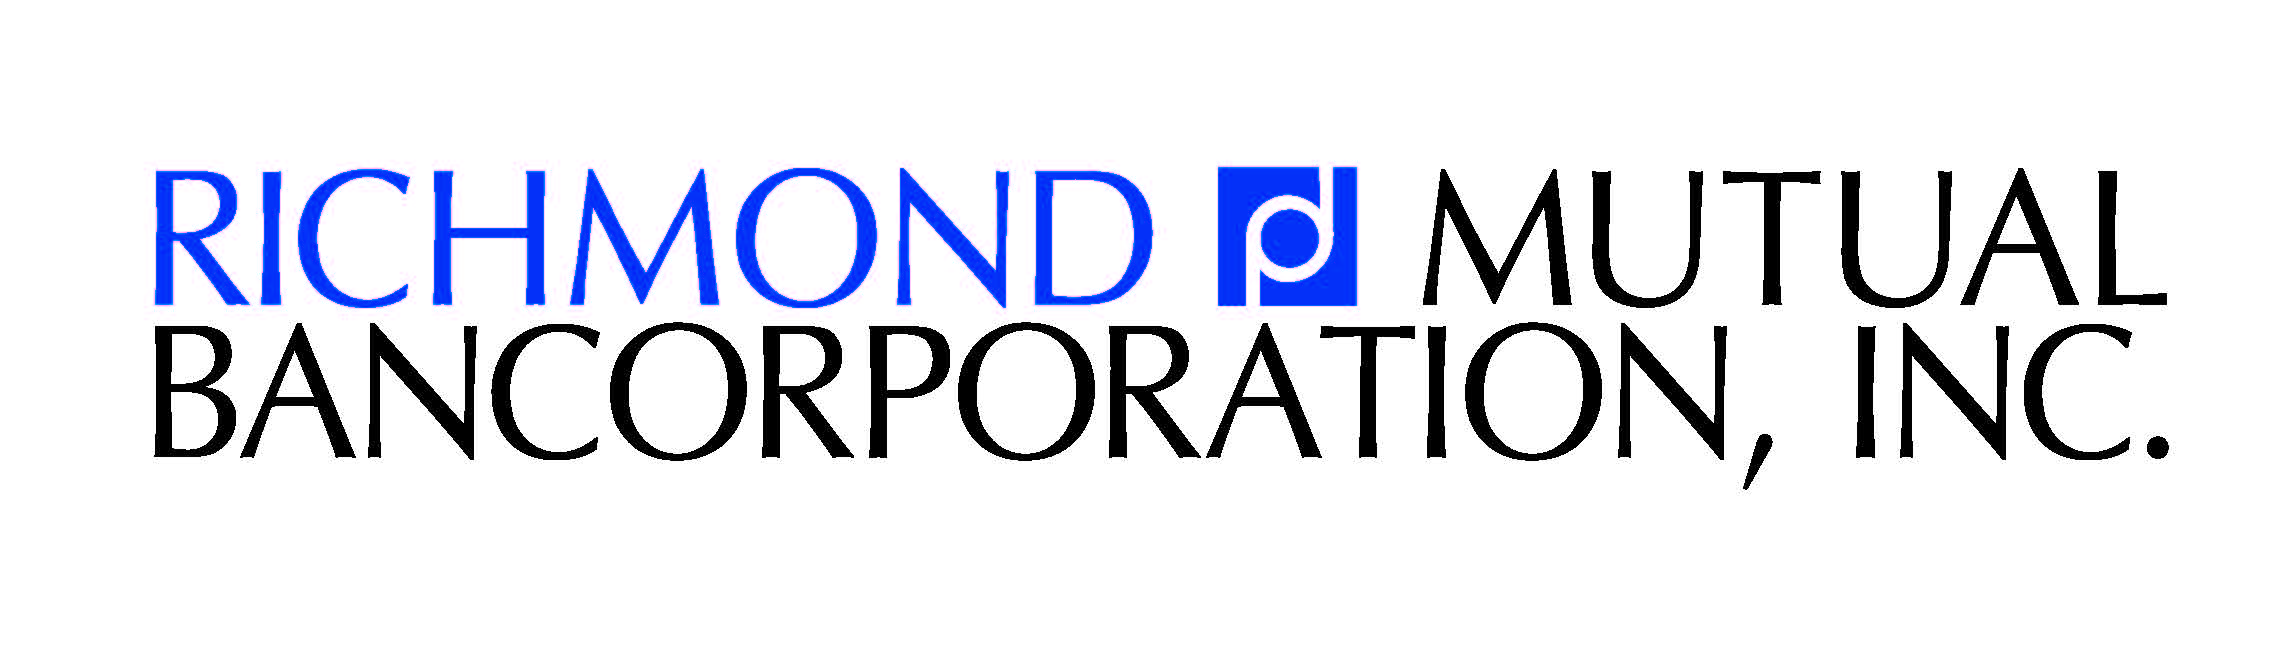 Richmond Mutual Bancorporation, Inc.